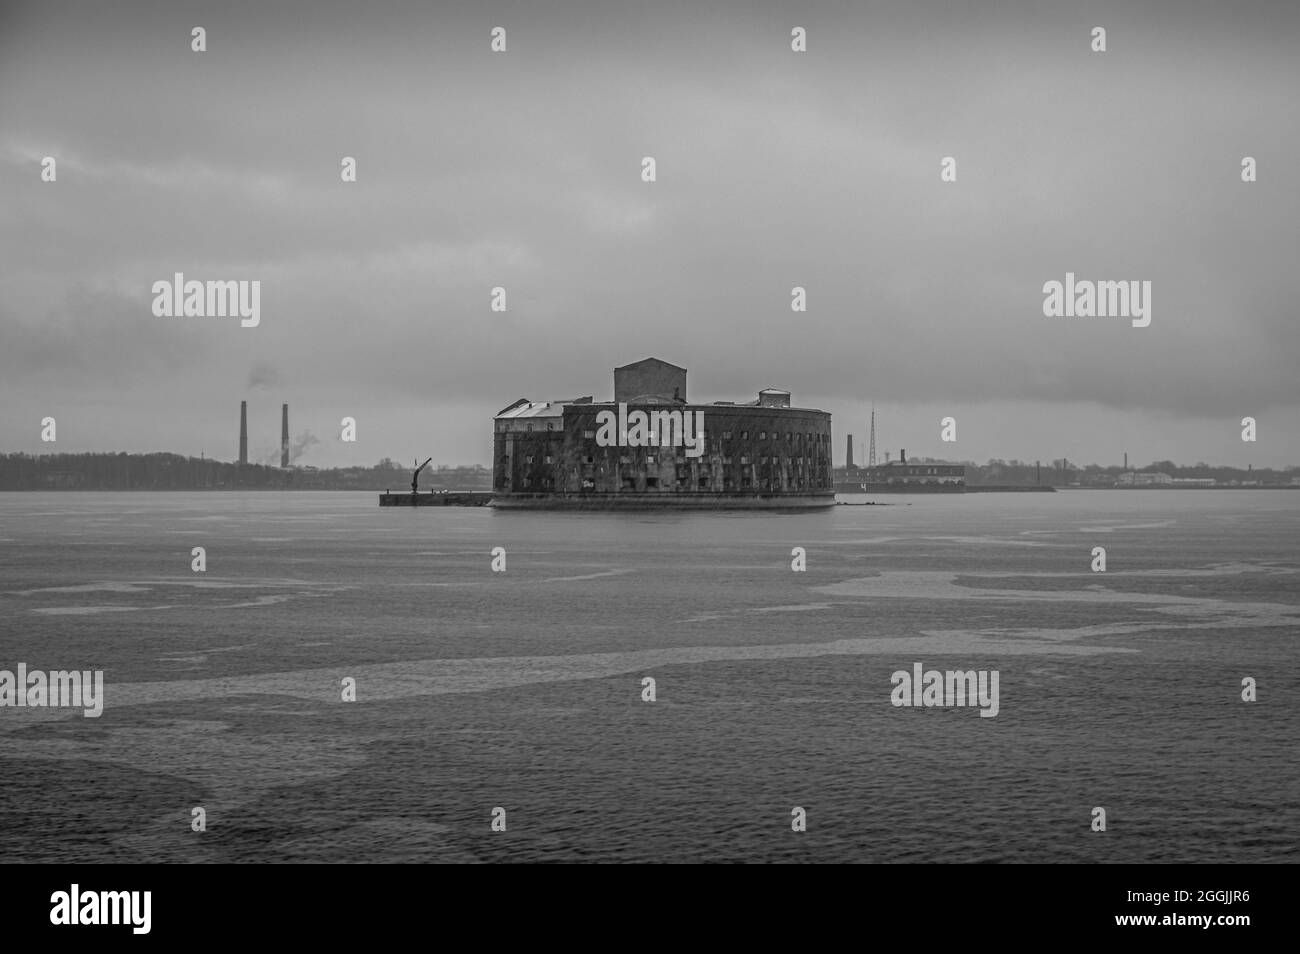 Fortaleza naval en el Golfo de Finlandia durante la lluvia. Fort Alexander / plague fort. Blanco y negro. Foto de stock